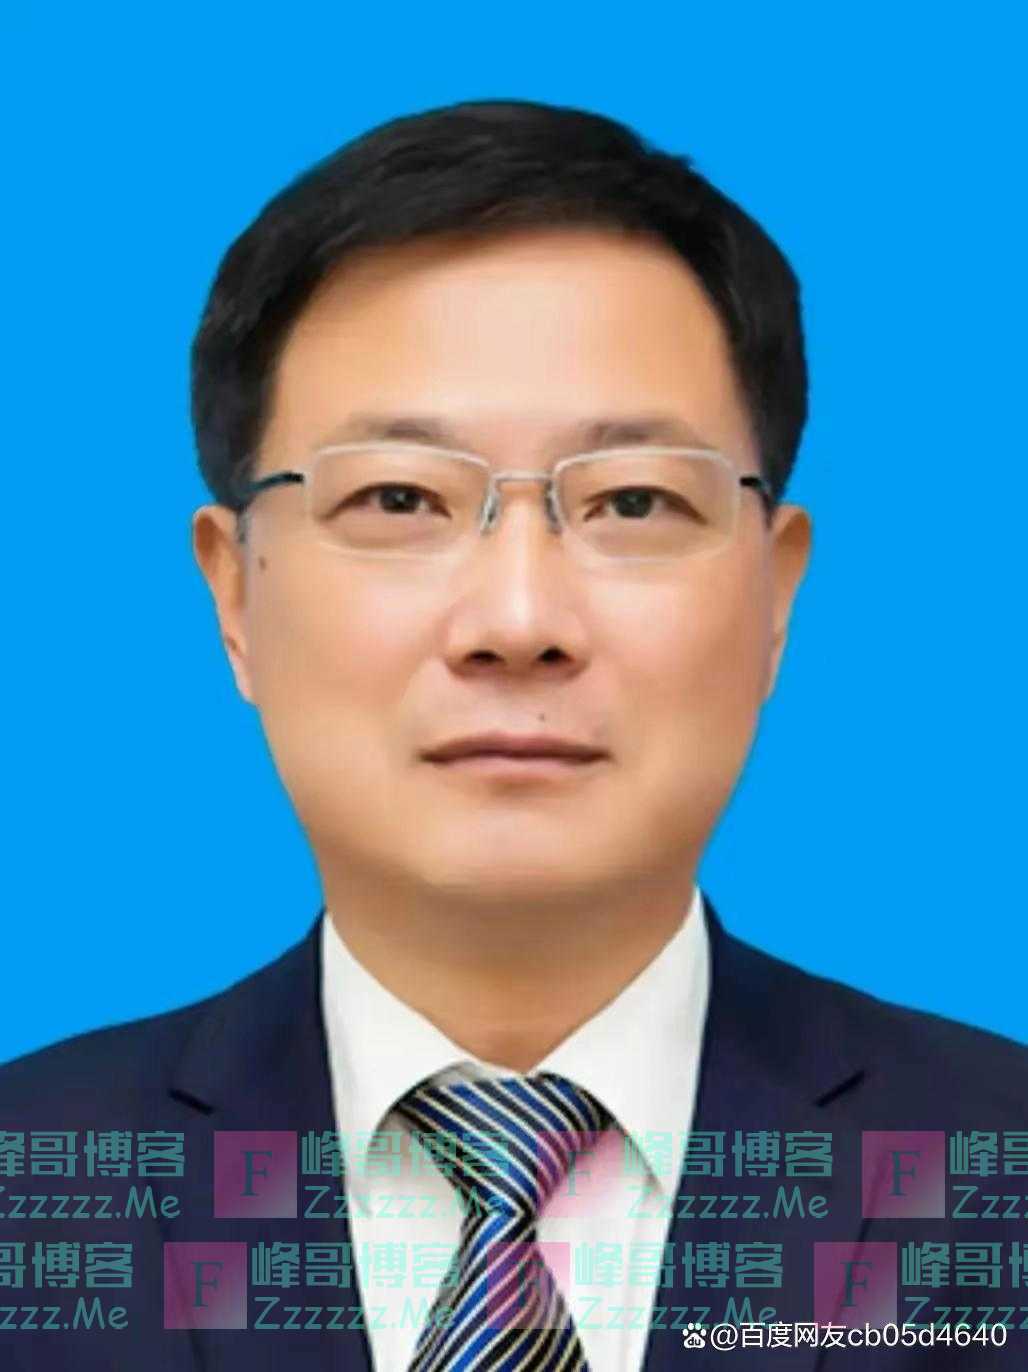 一个改革者的光辉篇章——淄博市委书记马晓磊“功高盖主”